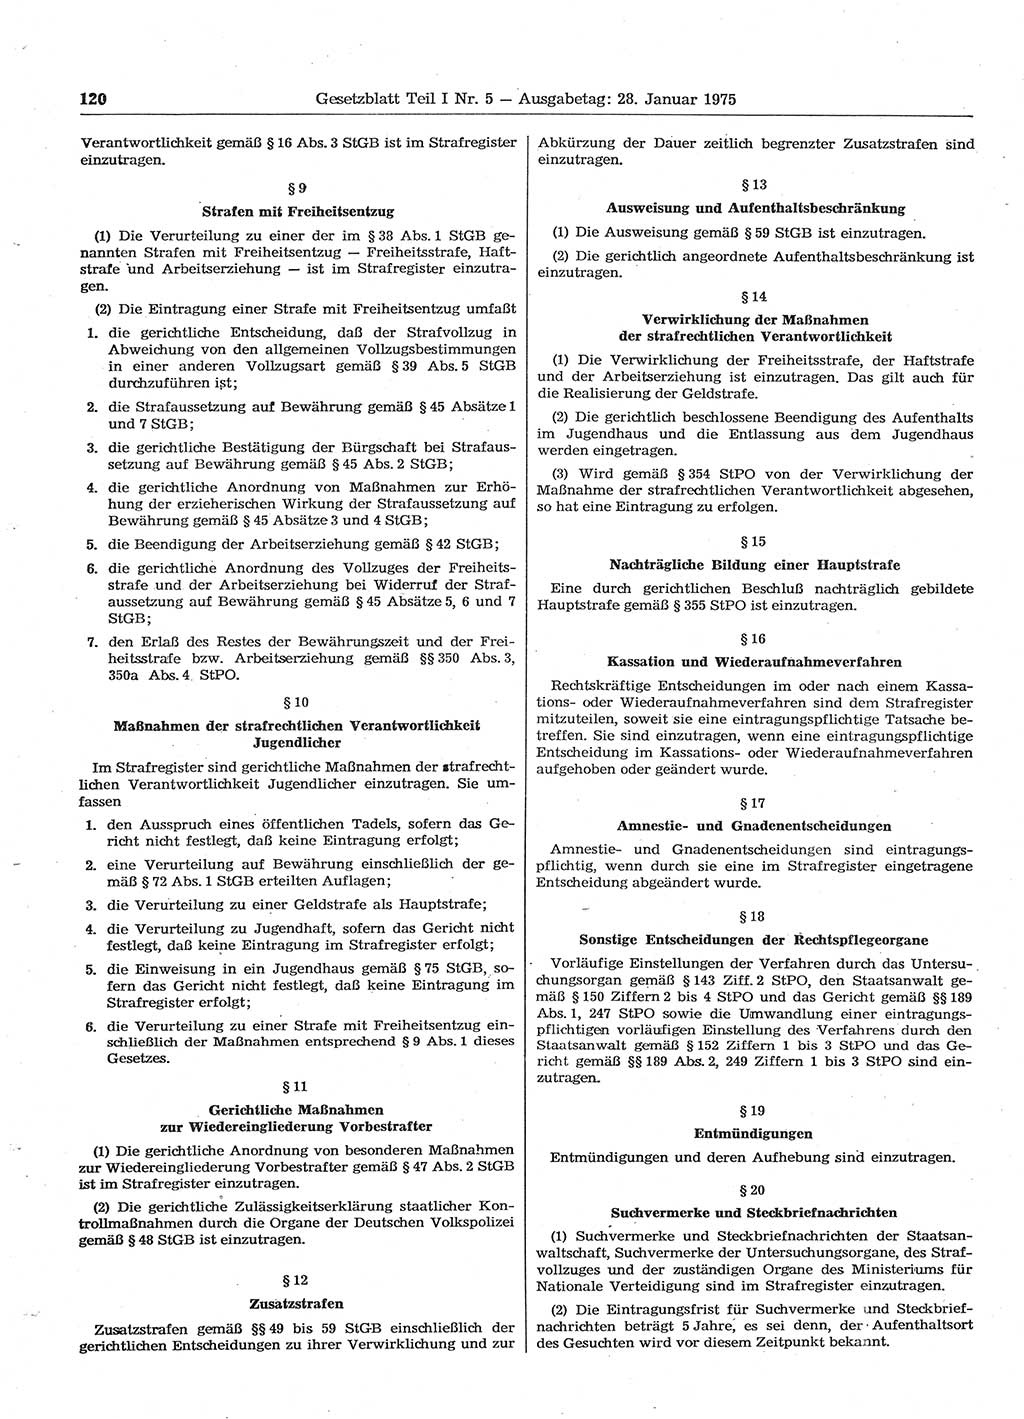 Gesetzblatt (GBl.) der Deutschen Demokratischen Republik (DDR) Teil Ⅰ 1975, Seite 120 (GBl. DDR Ⅰ 1975, S. 120)